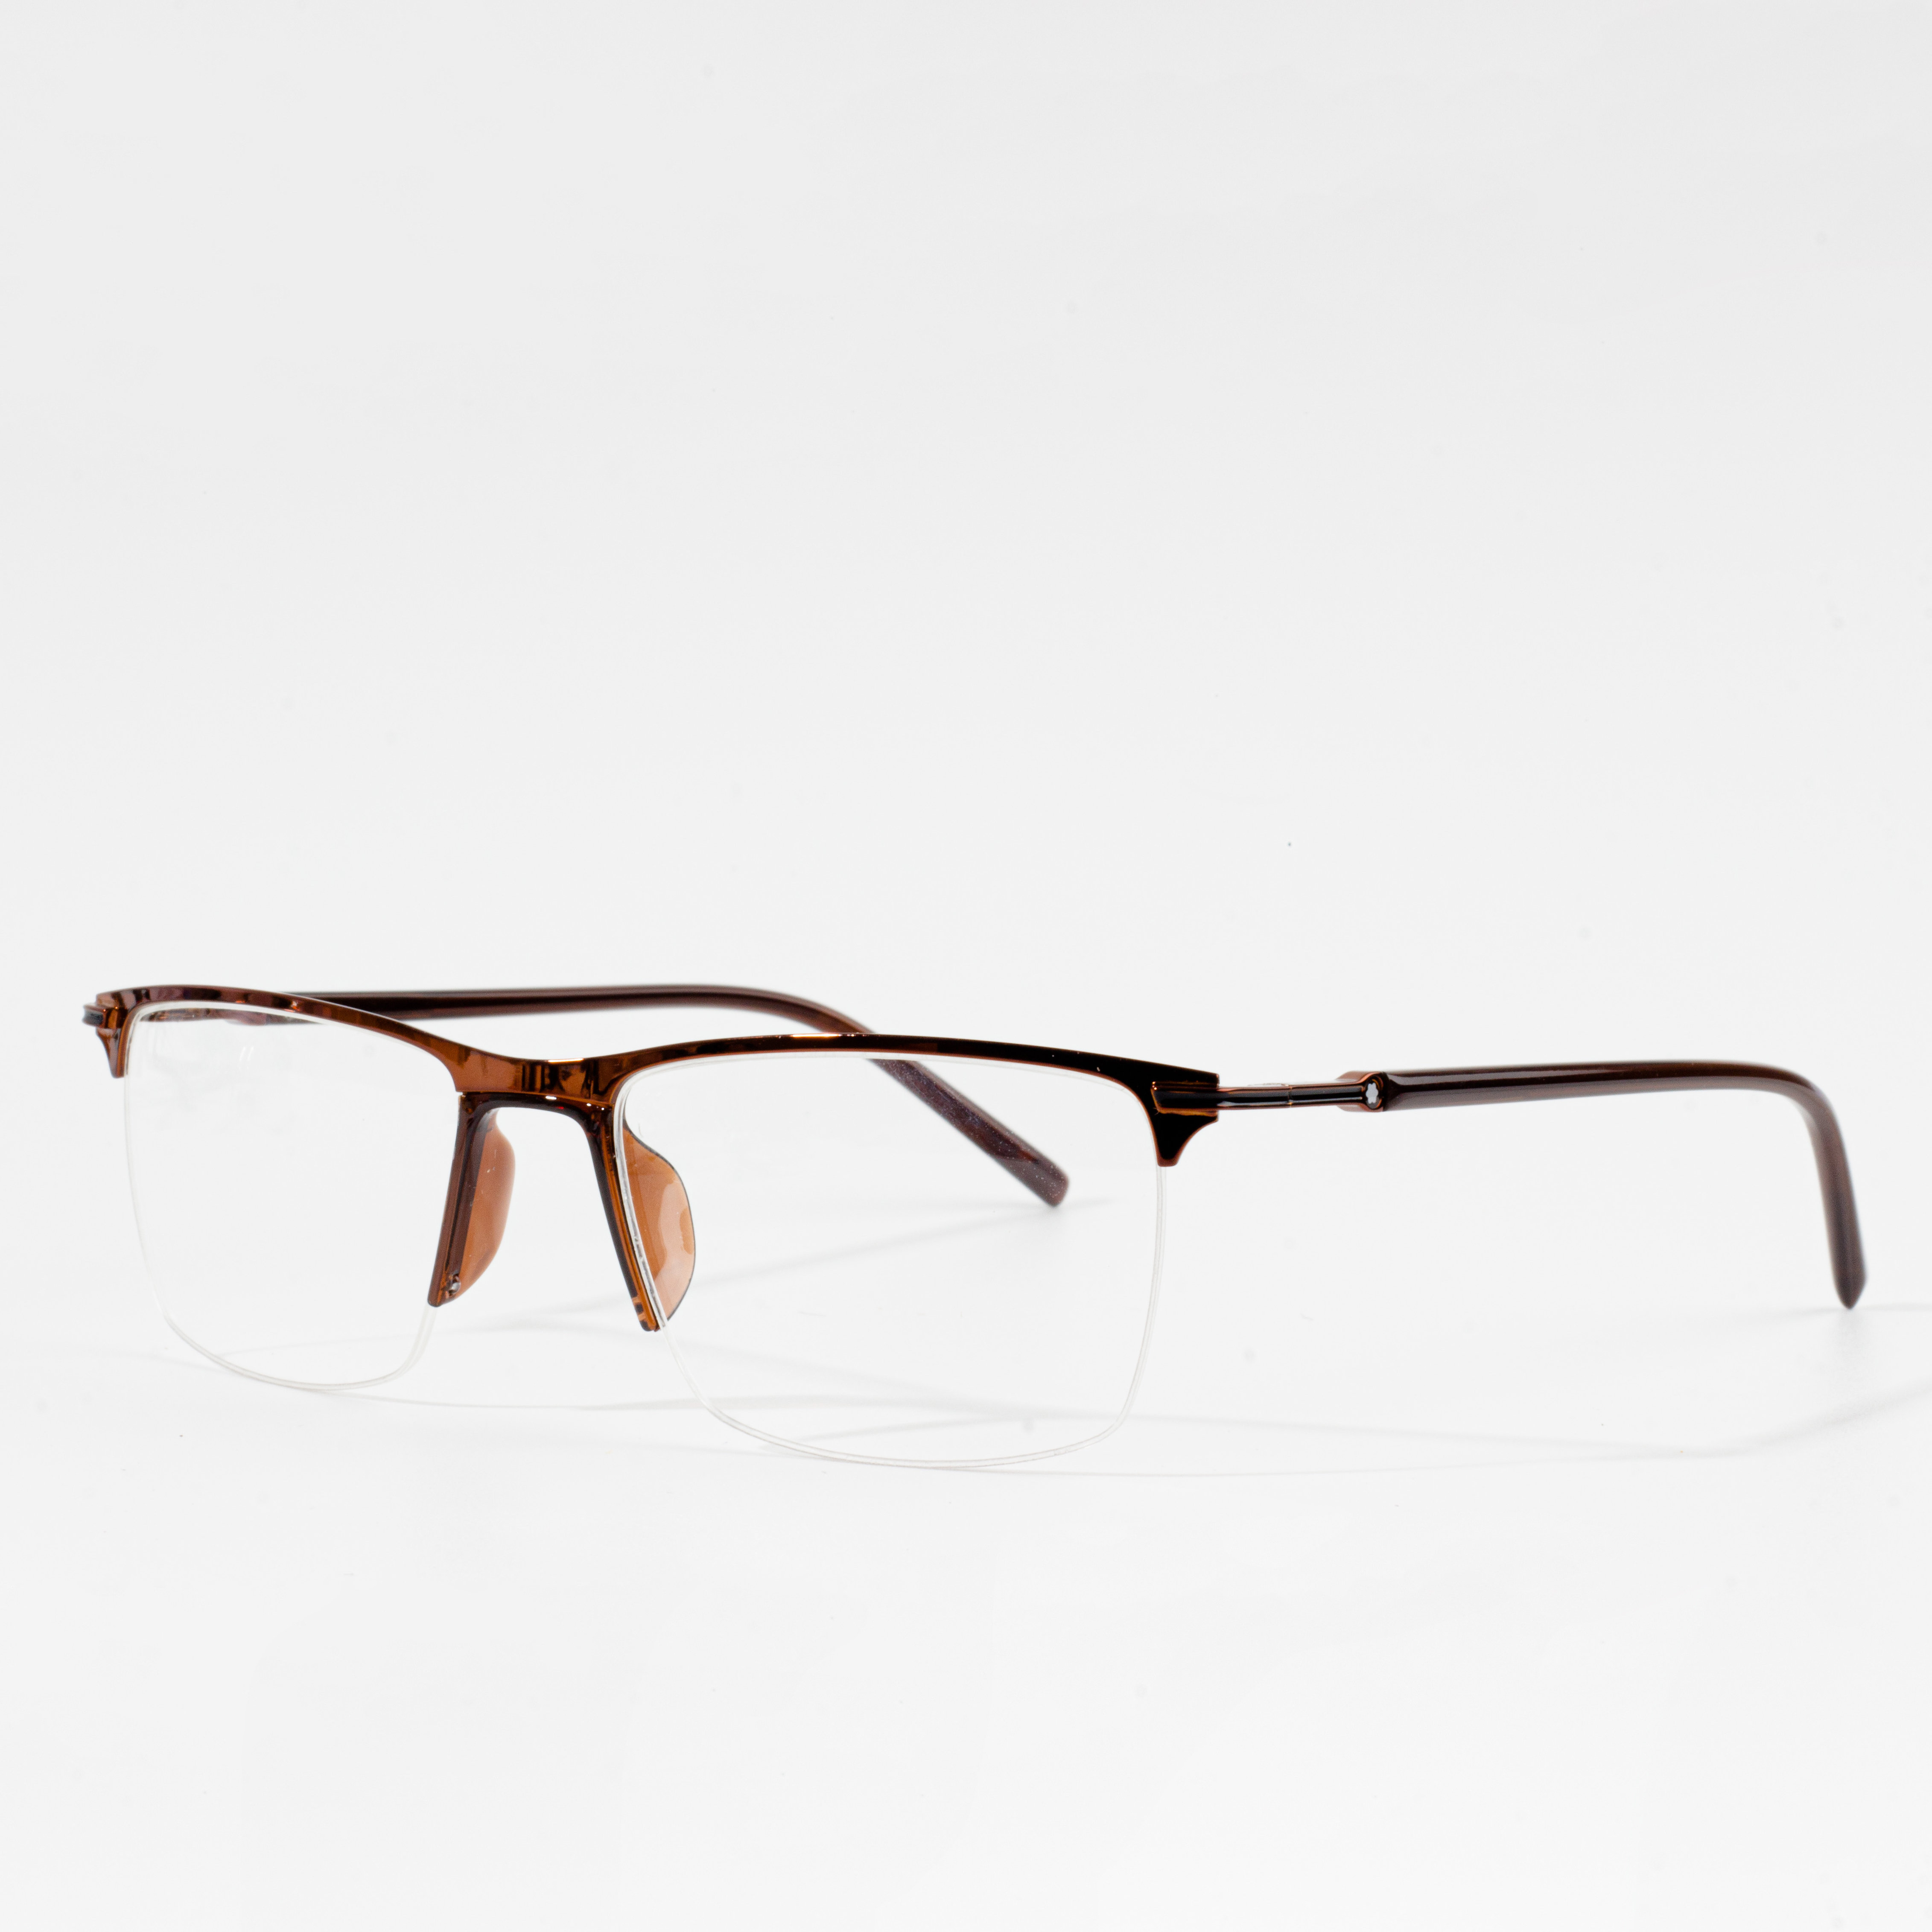 tontonan Optical Eyeglasses Frames